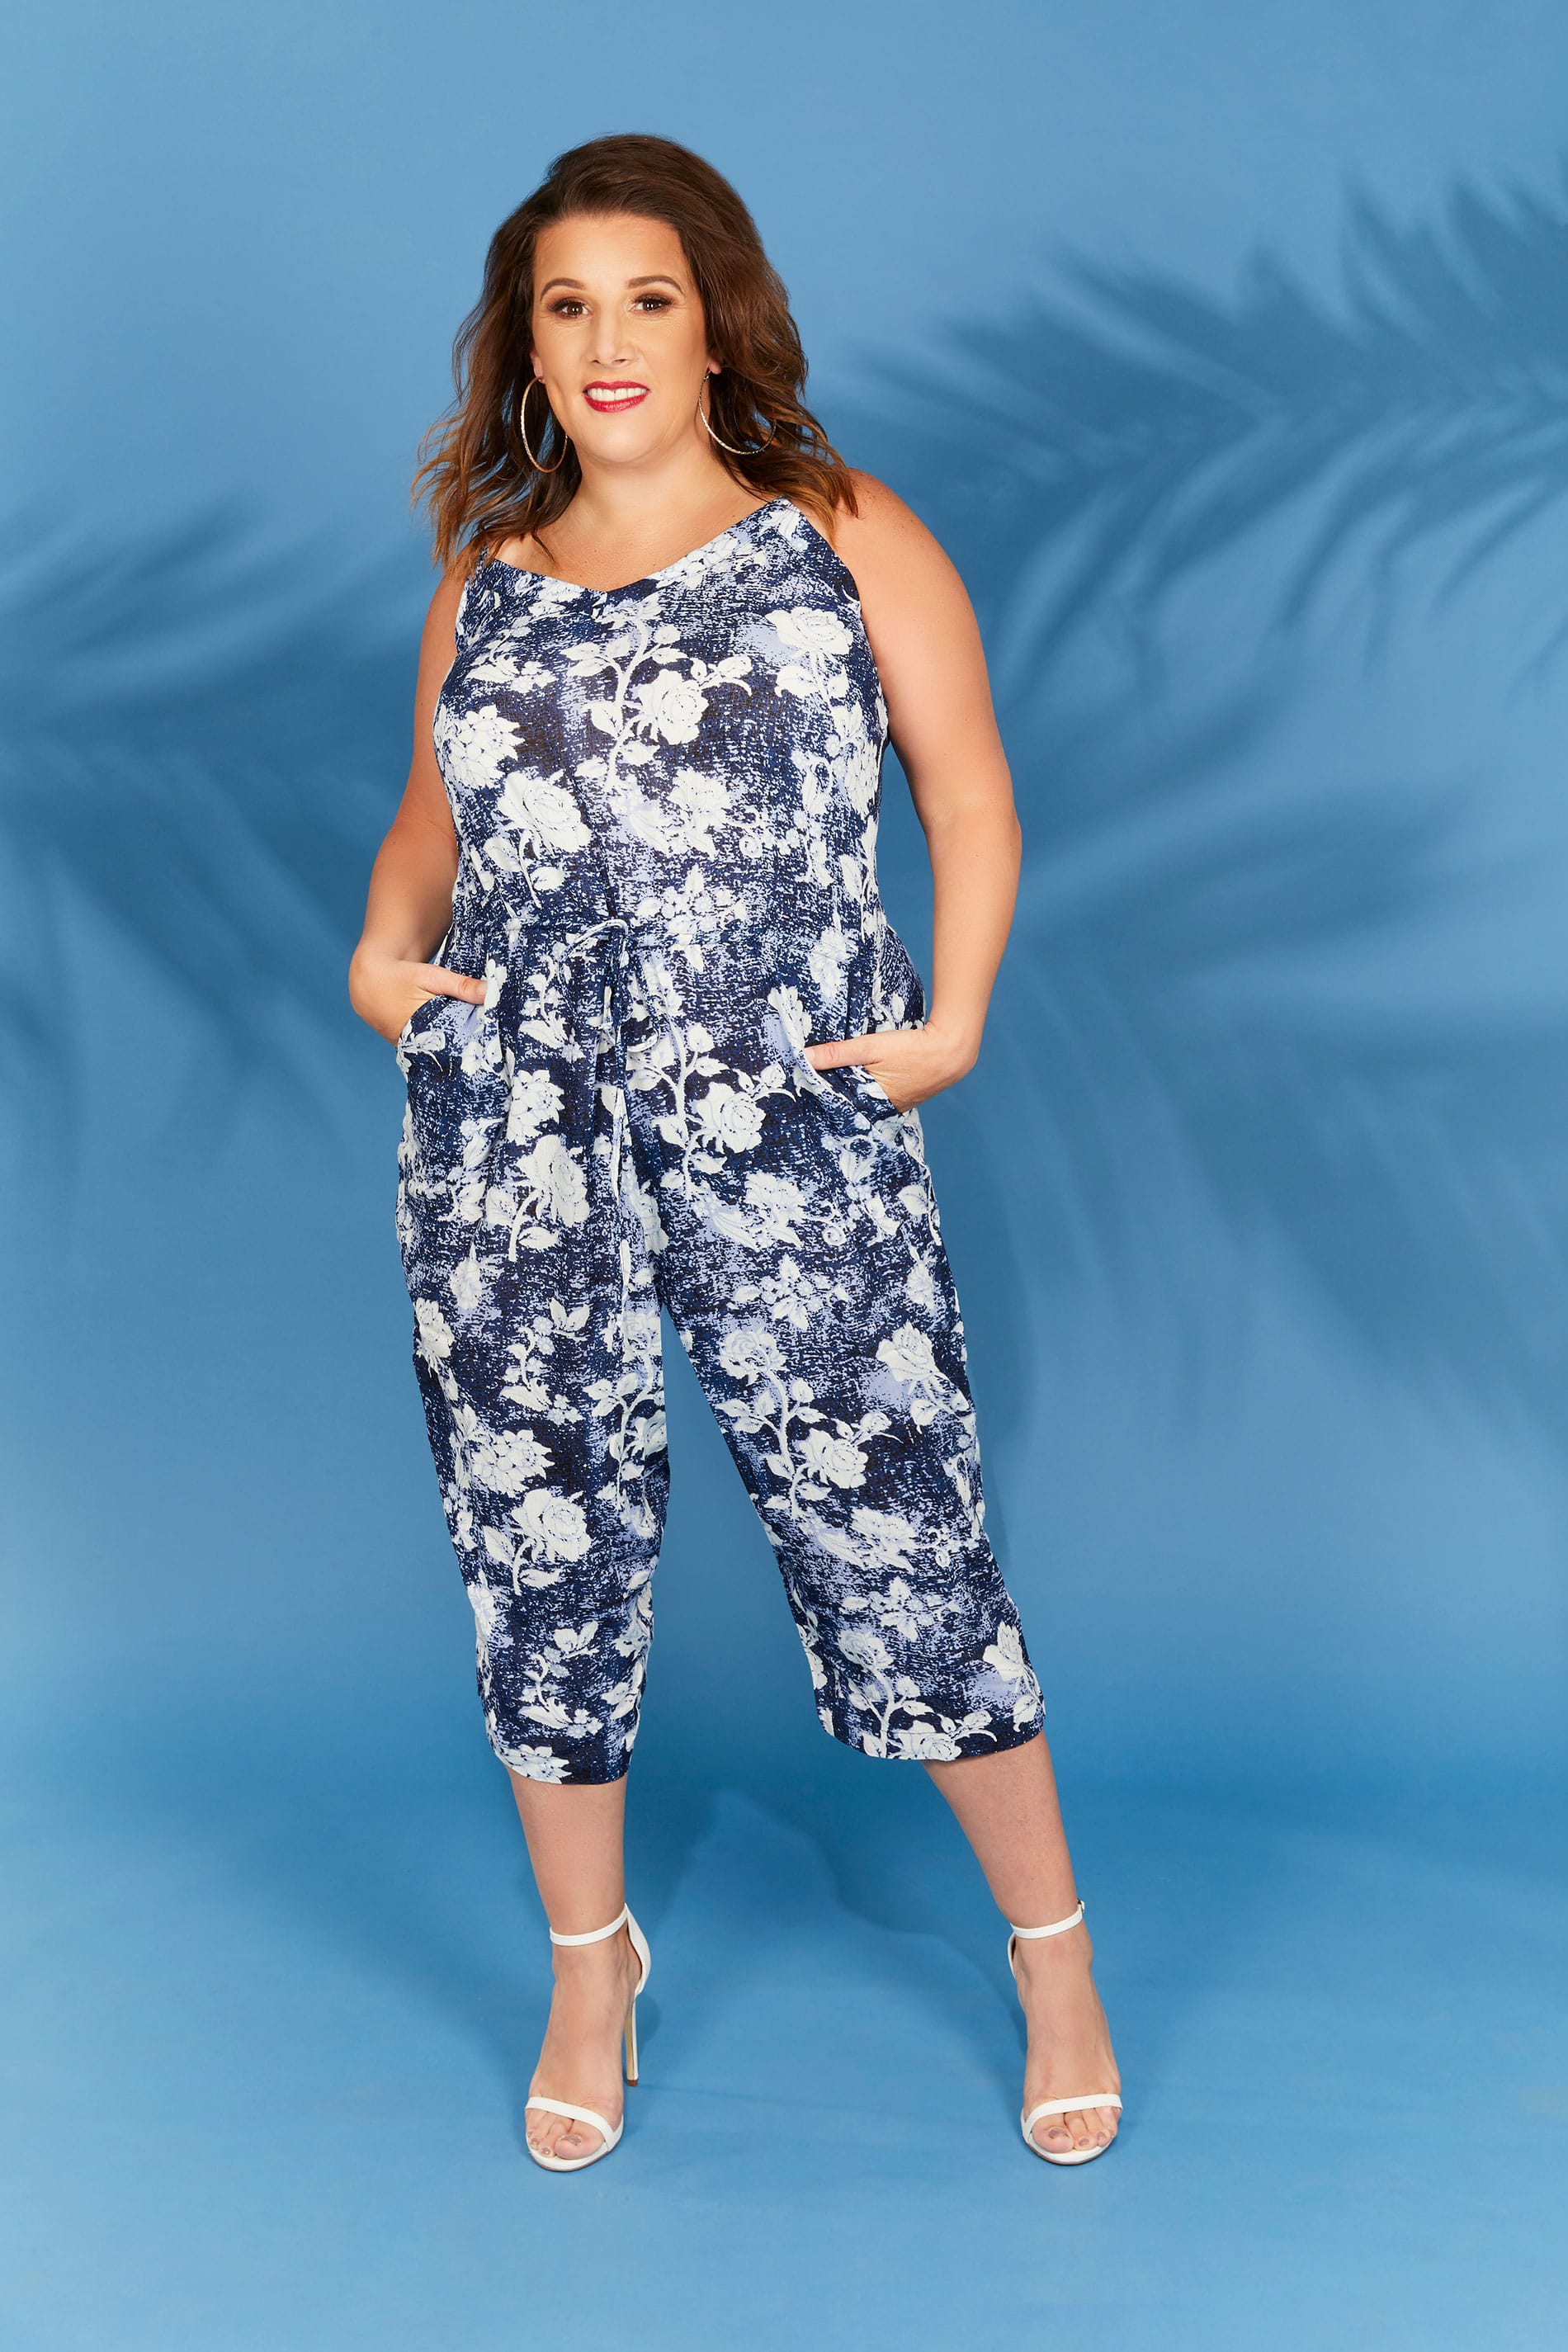 Navy Blue Floral Print Jumpsuit, plus size 16 to 36